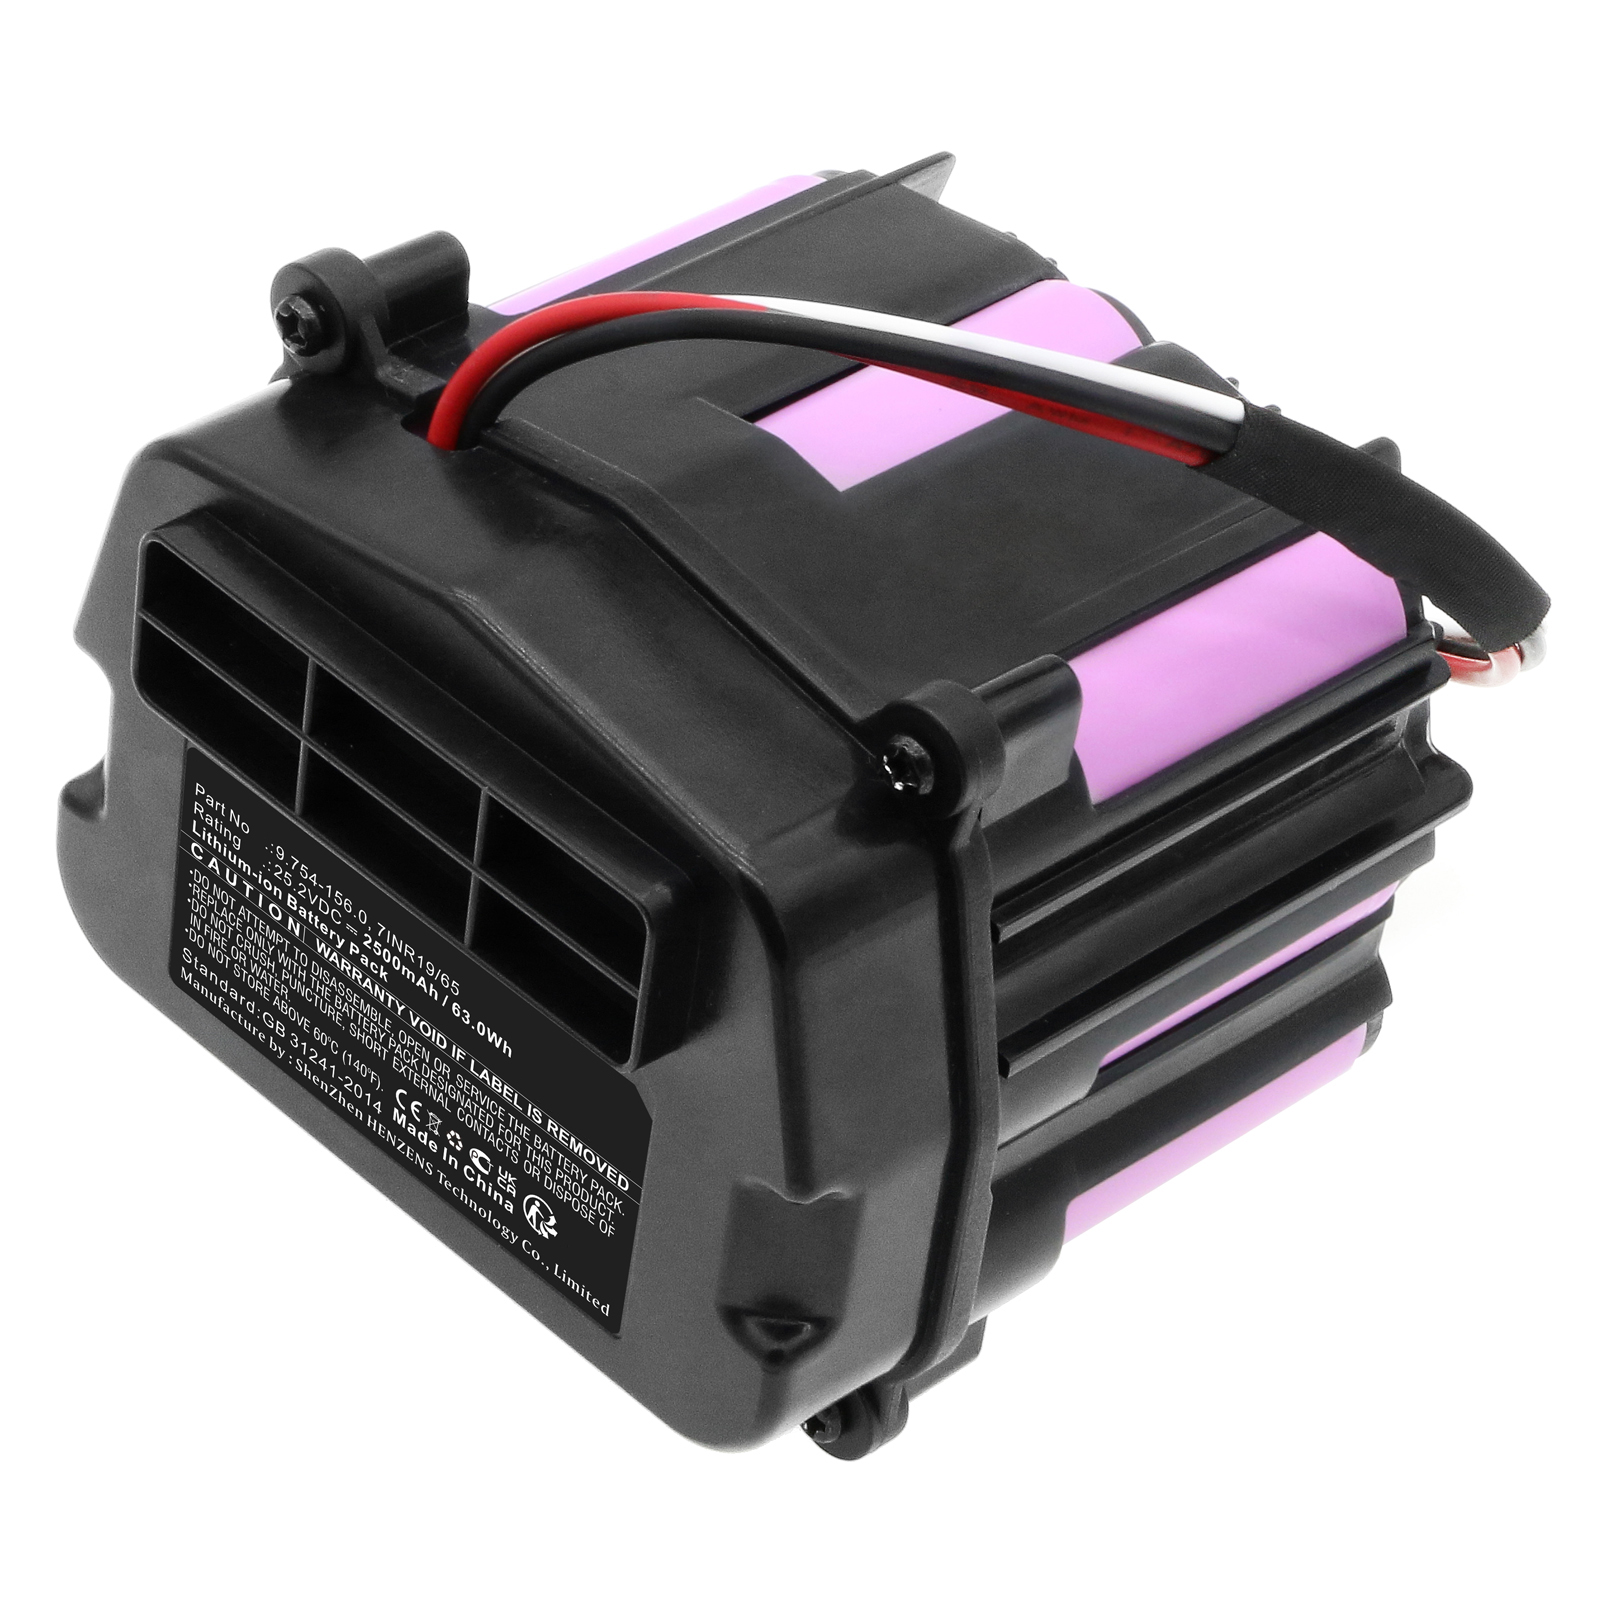 Synergy Digital Vacuum Cleaner Battery, Compatible with Karcher 7INR19/65 Vacuum Cleaner Battery (Li-Ion, 25.2V, 2500mAh)